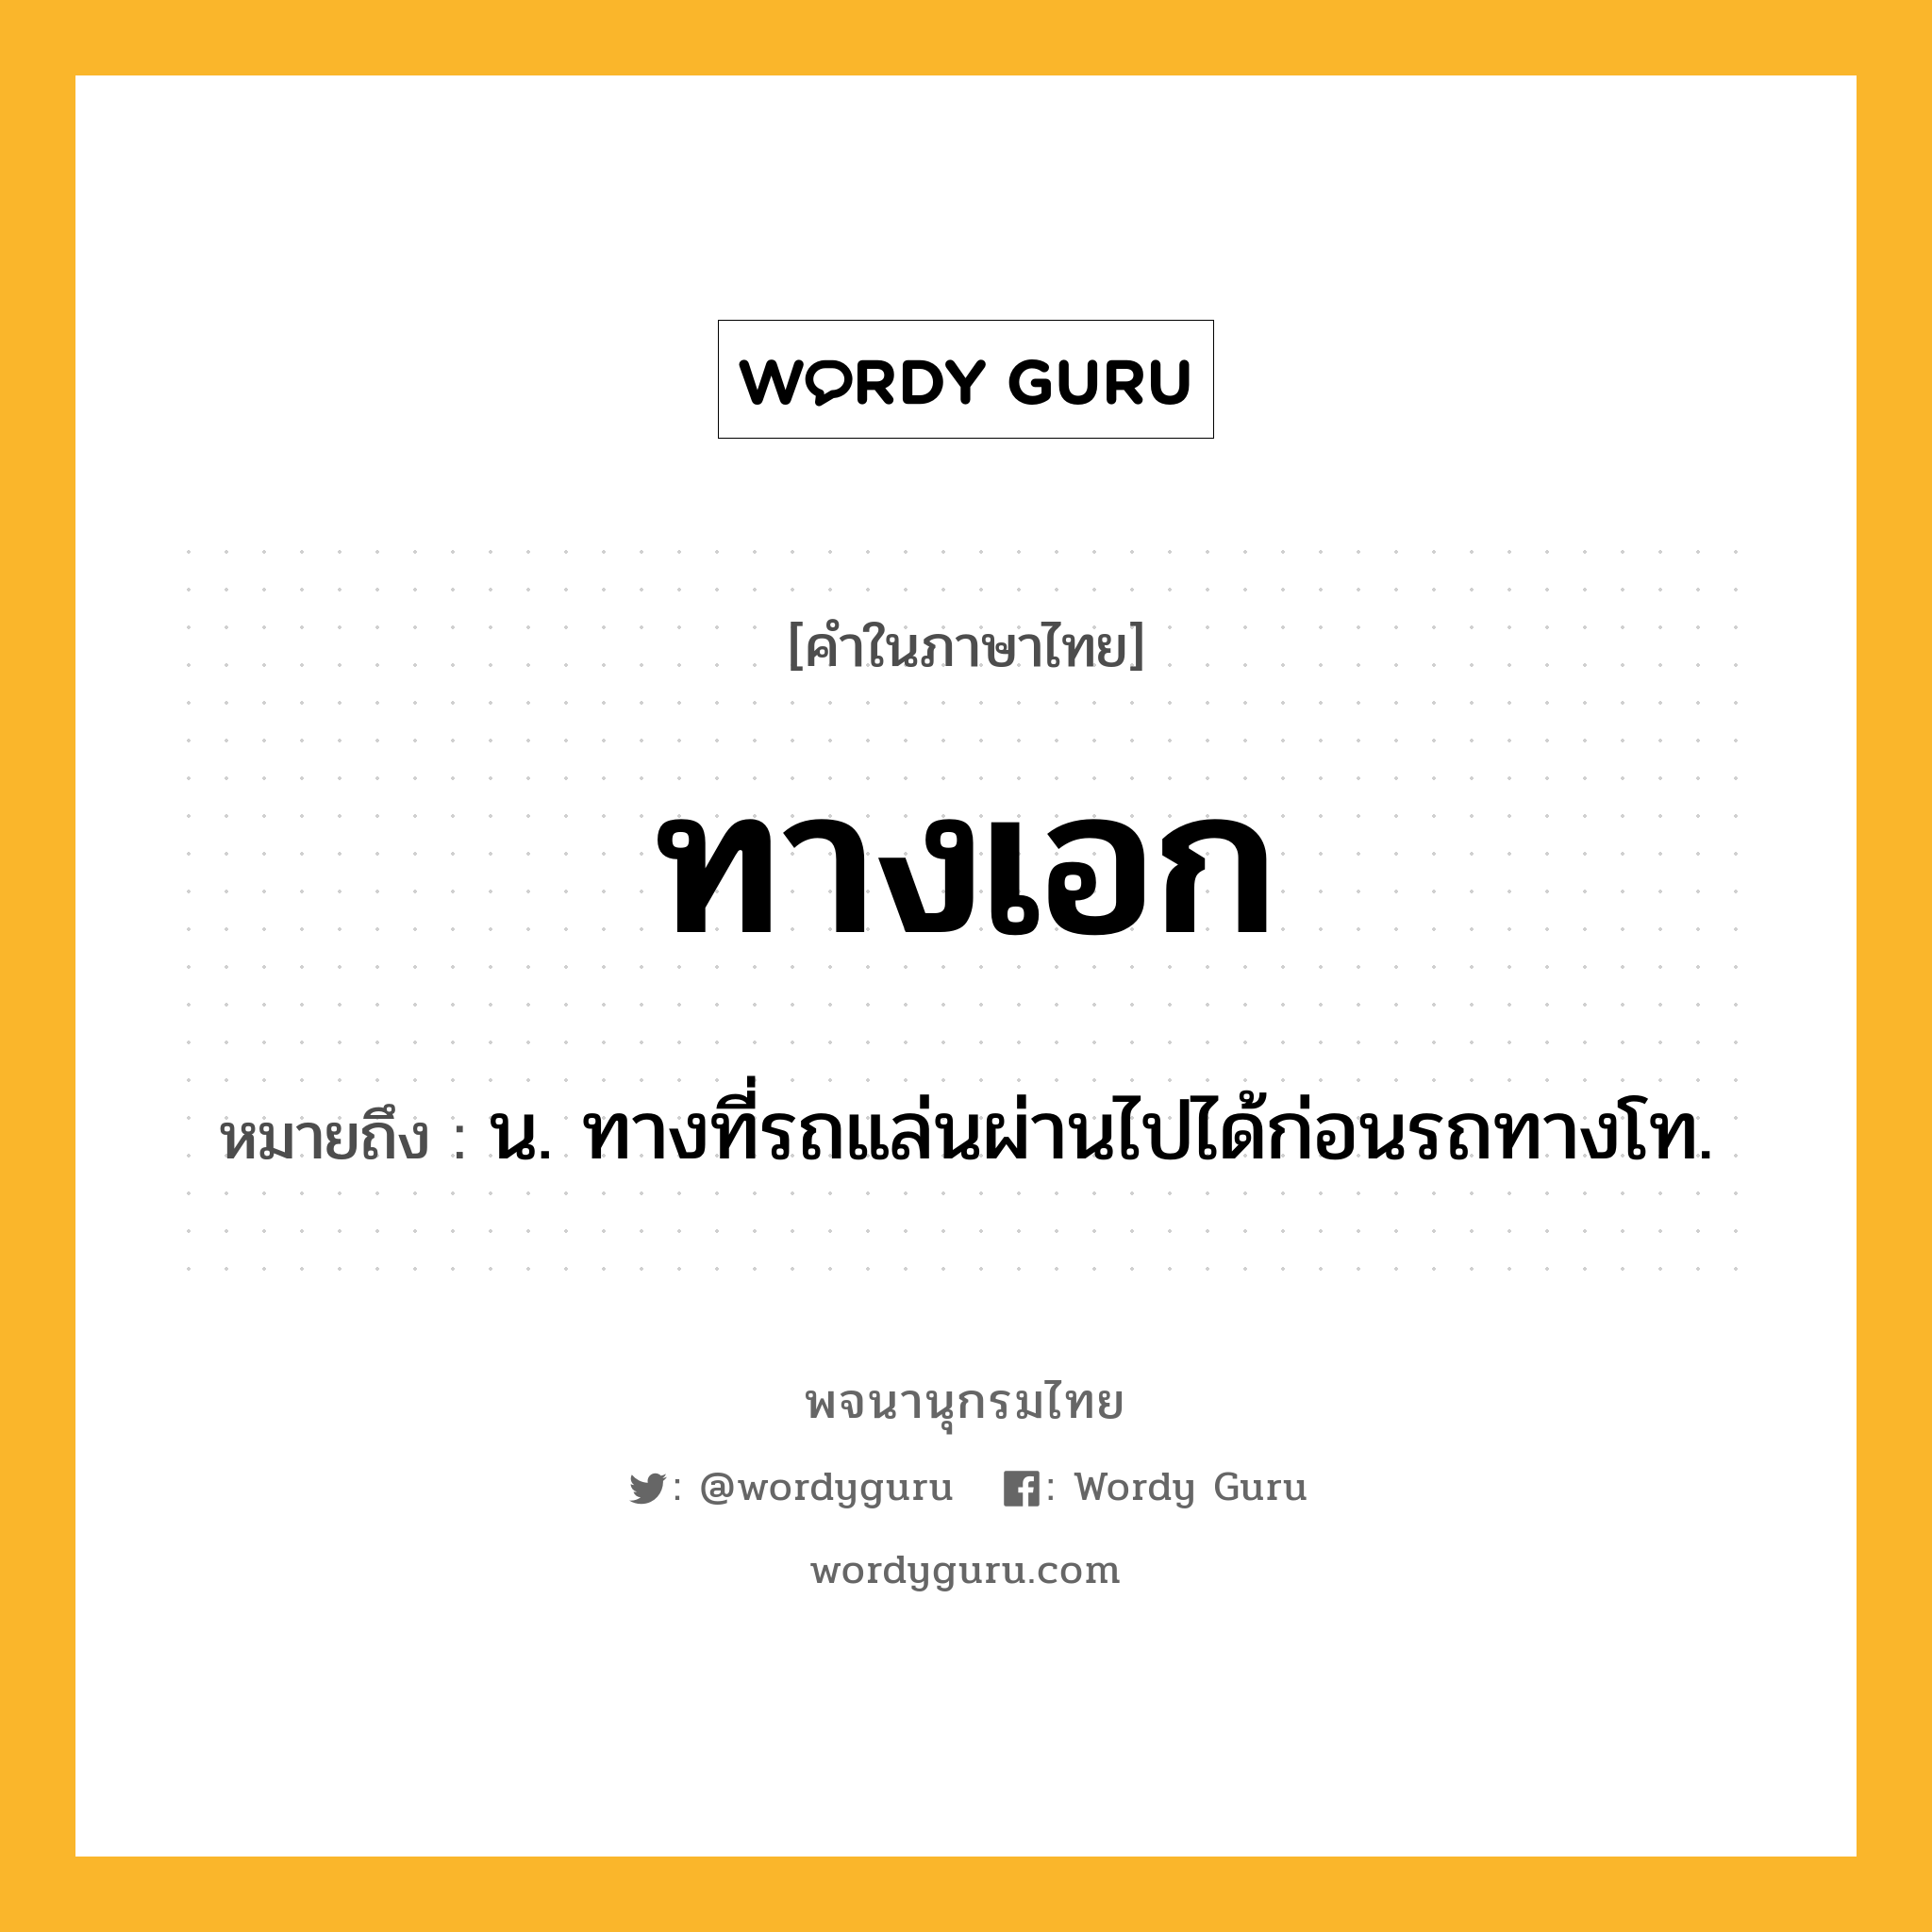 ทางเอก ความหมาย หมายถึงอะไร?, คำในภาษาไทย ทางเอก หมายถึง น. ทางที่รถแล่นผ่านไปได้ก่อนรถทางโท.